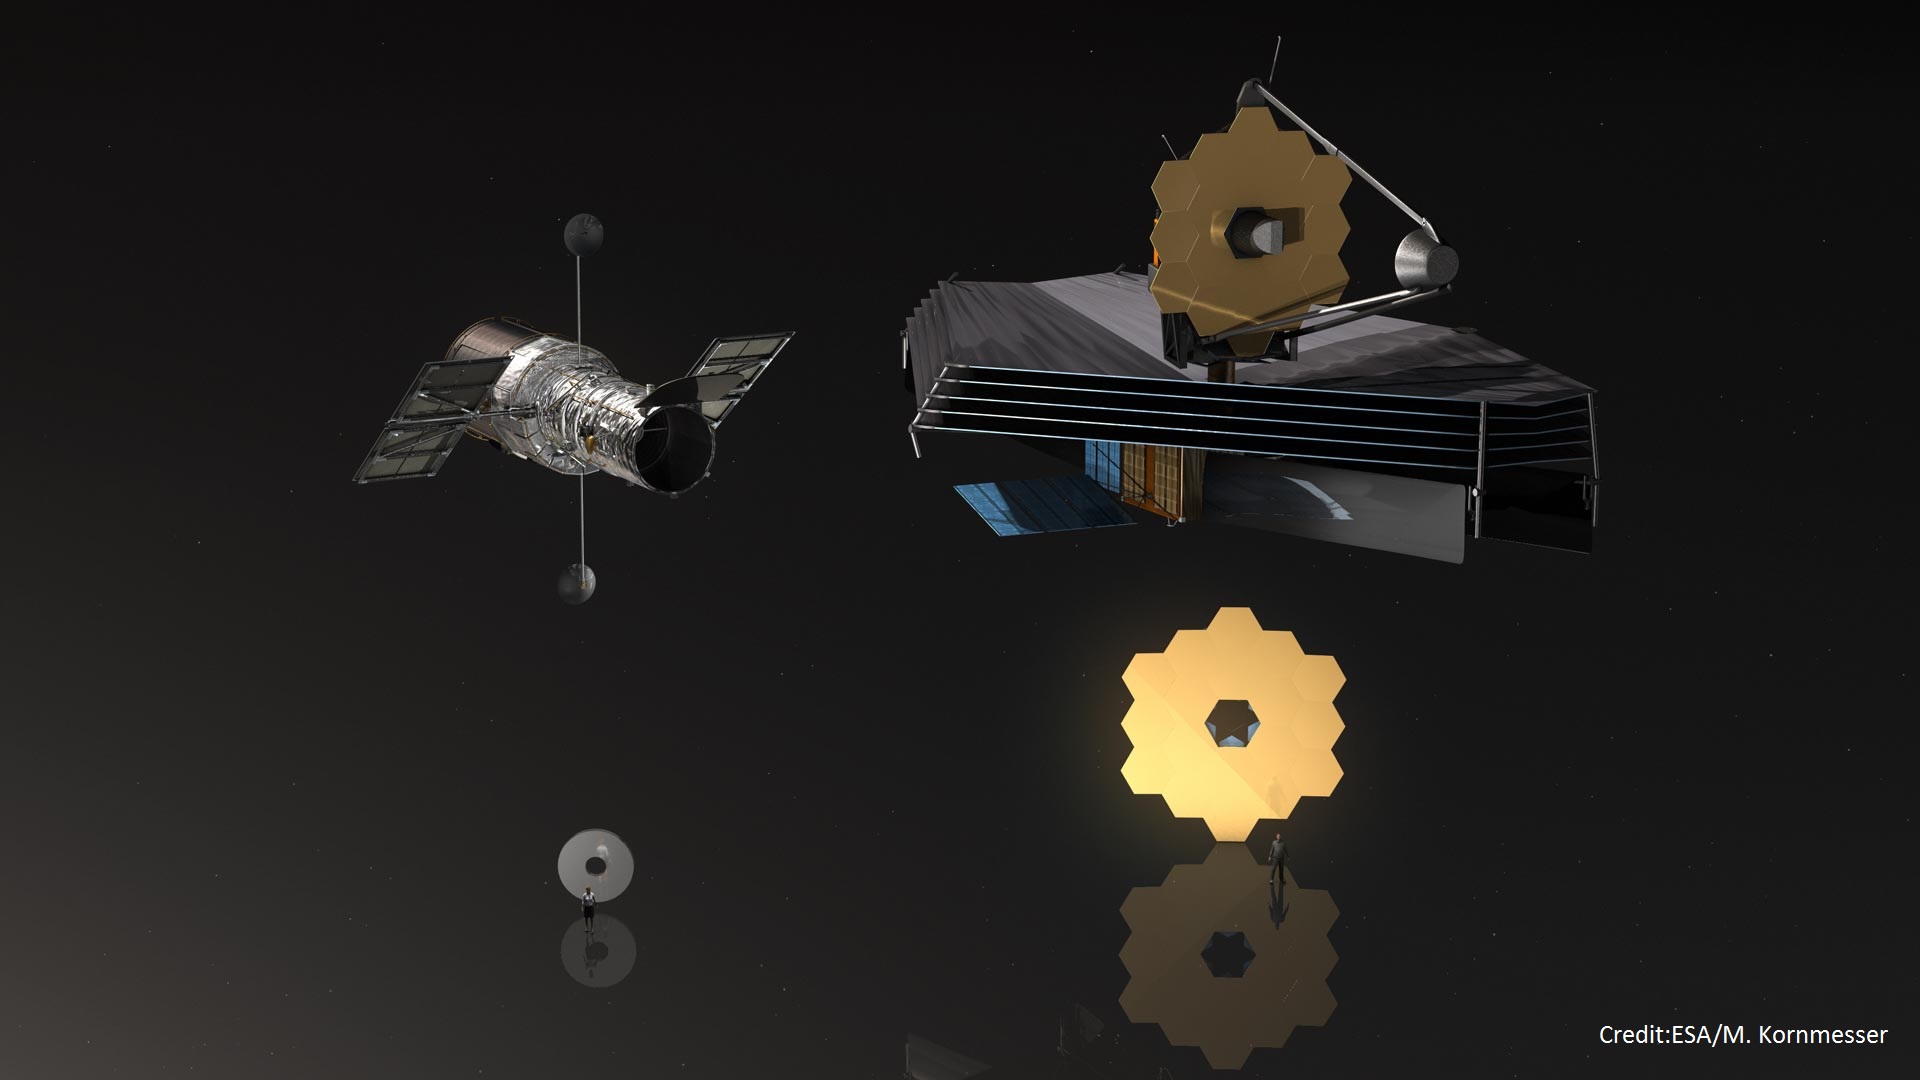 Üst tarafta Hubble ve James Webb teleskoplarının karşılaştırması, alt tarafta ise teleskop aynalarının insan boyutuyla karşılaştırması yer almaktadır.